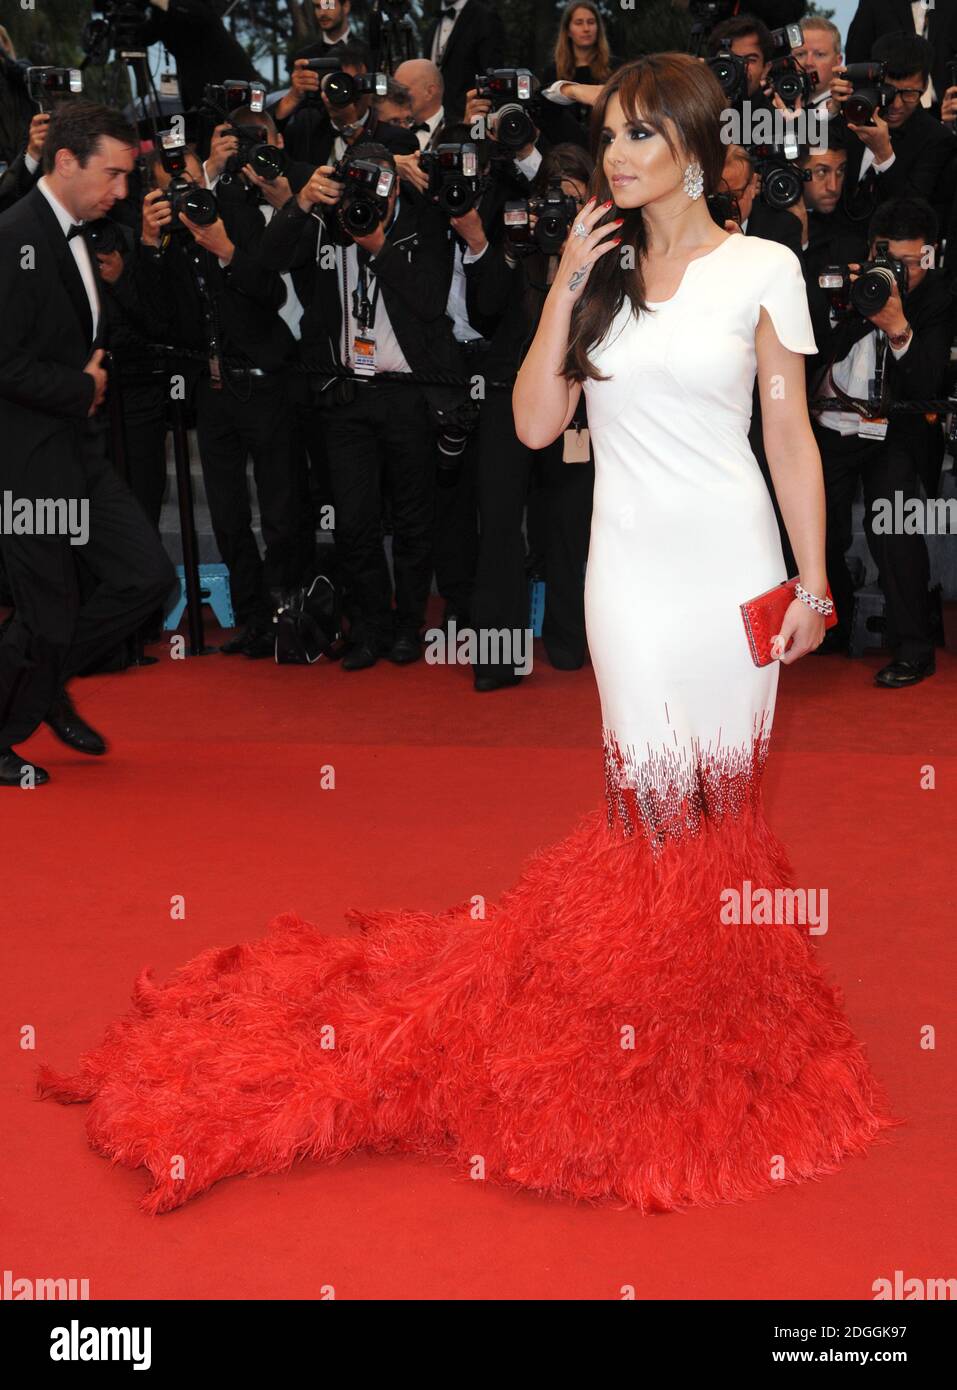 Cheryl Cole arriva al Gala Screening di Amour, tenuto al Palais de Festival, parte del 65° Festival di Cannes. Foto Stock